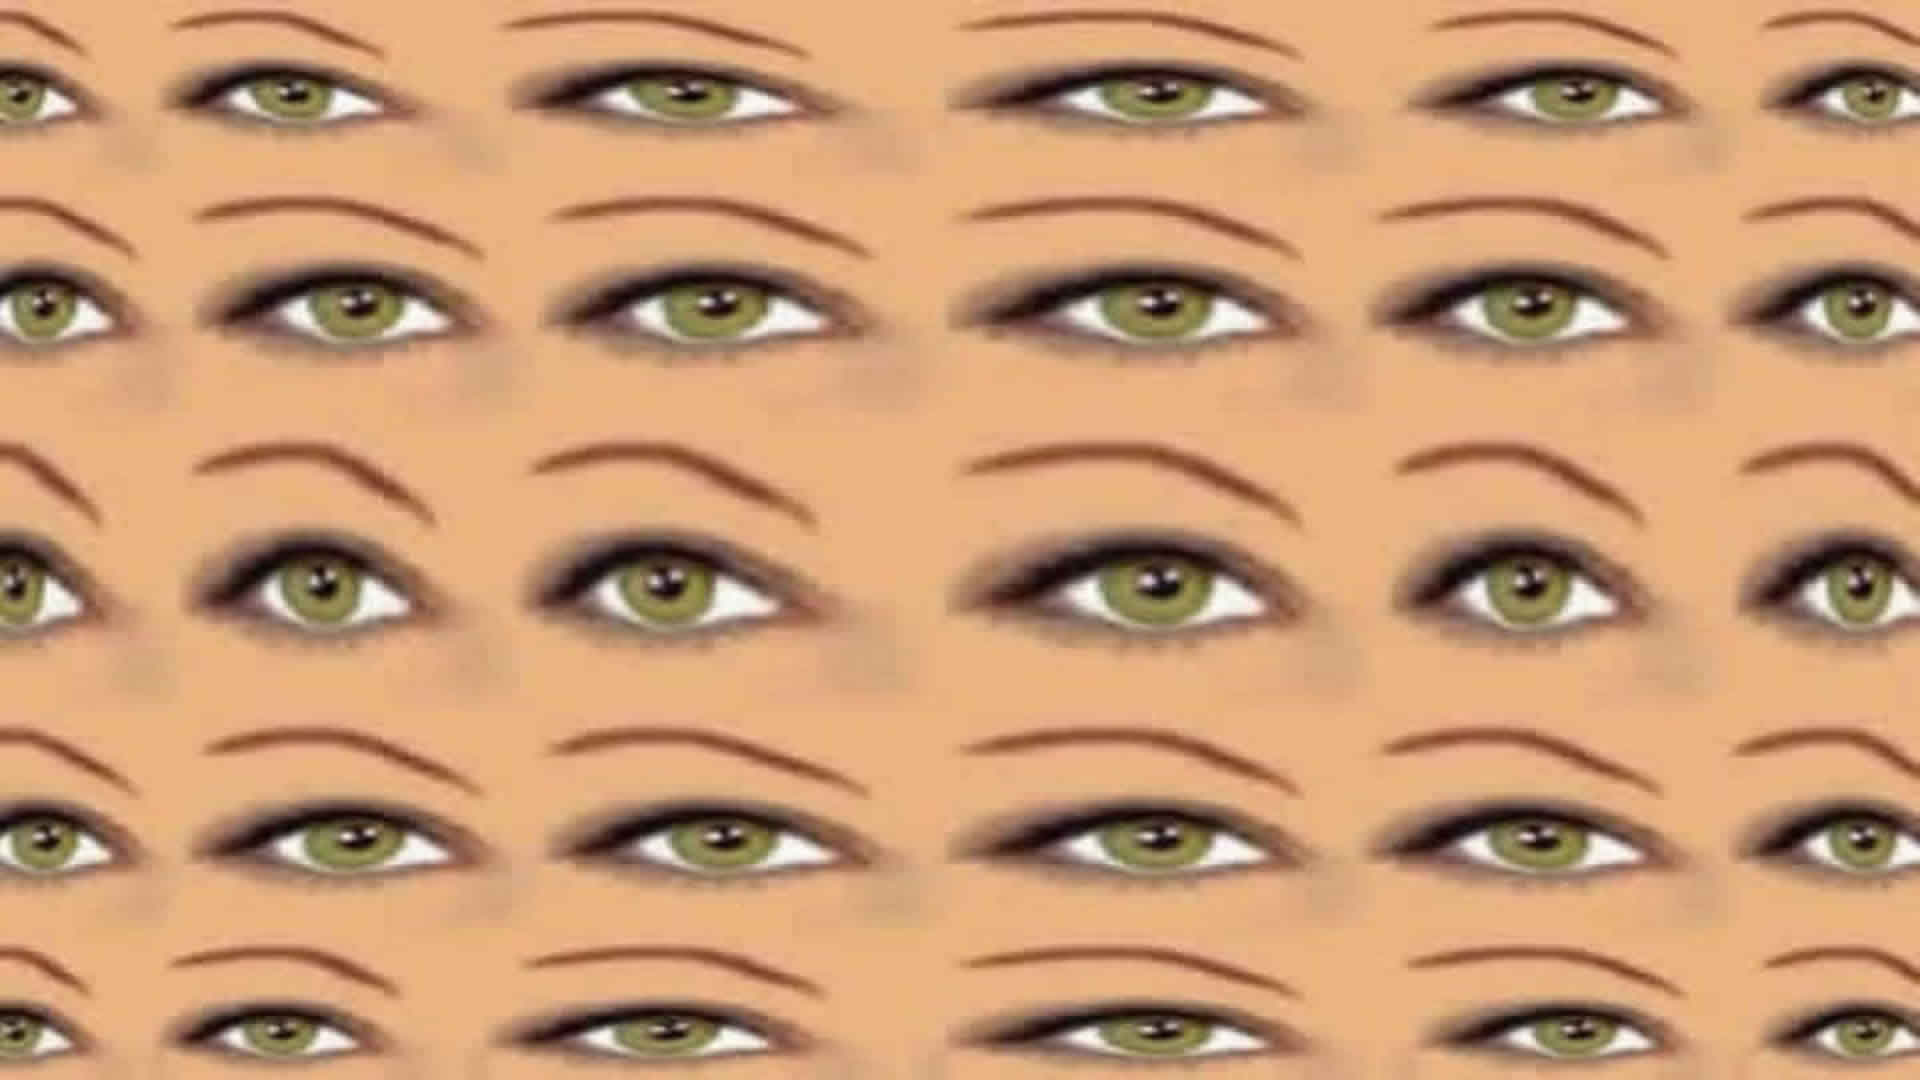 stereogramme en 3 d image plein ecran les yeux verts